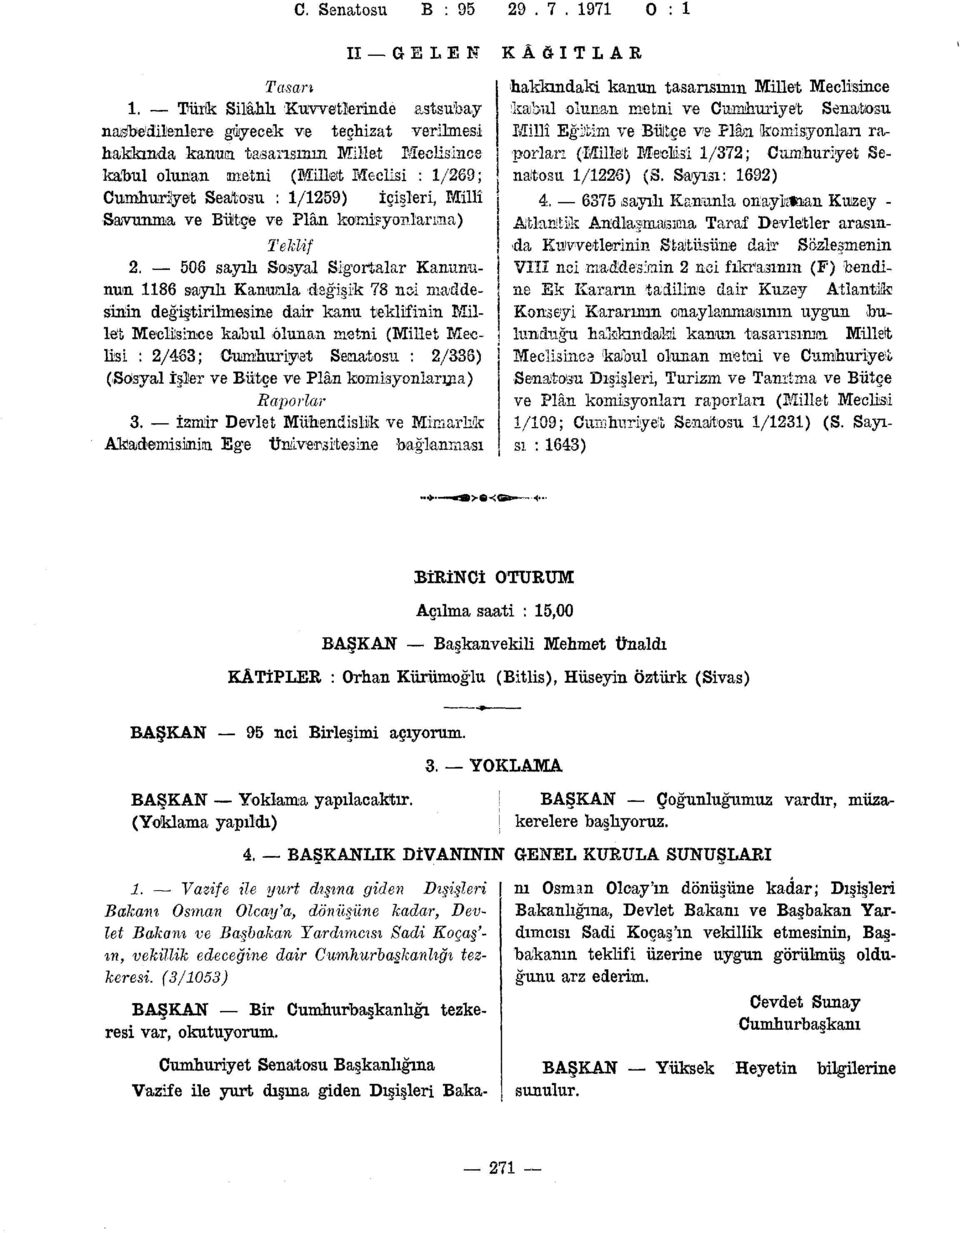 1/372; Cumhuriyet Se- hakkında kanua tasarısının Millet Meclisince kabul olunan metni (Millet Meclisi : 1/269; naltosu 1/1228) (S.